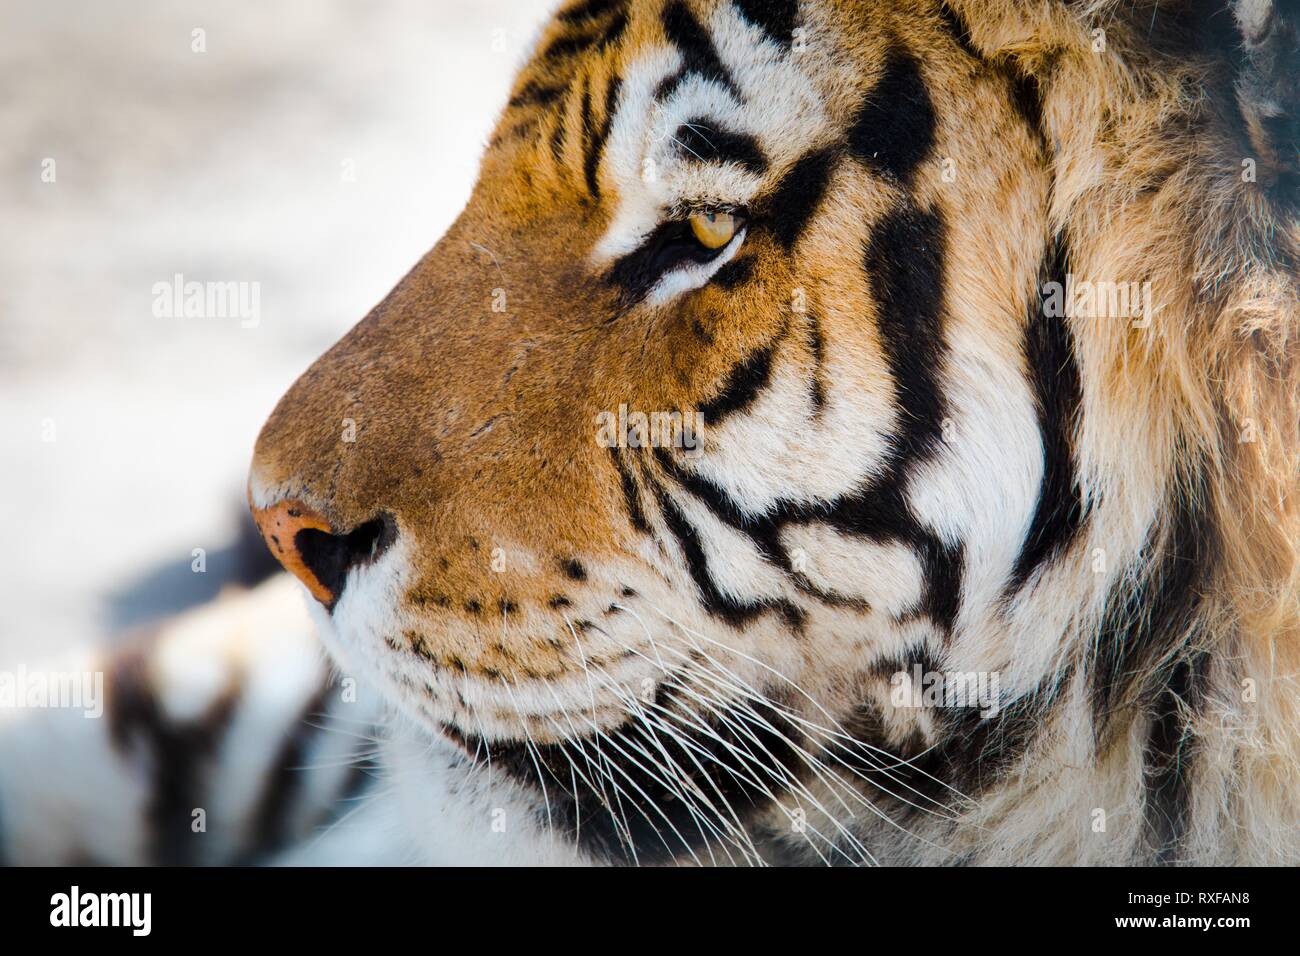 Tiger Gesicht im Detail von der linken Seite. Augen und Strings sichtbar. Stockfoto